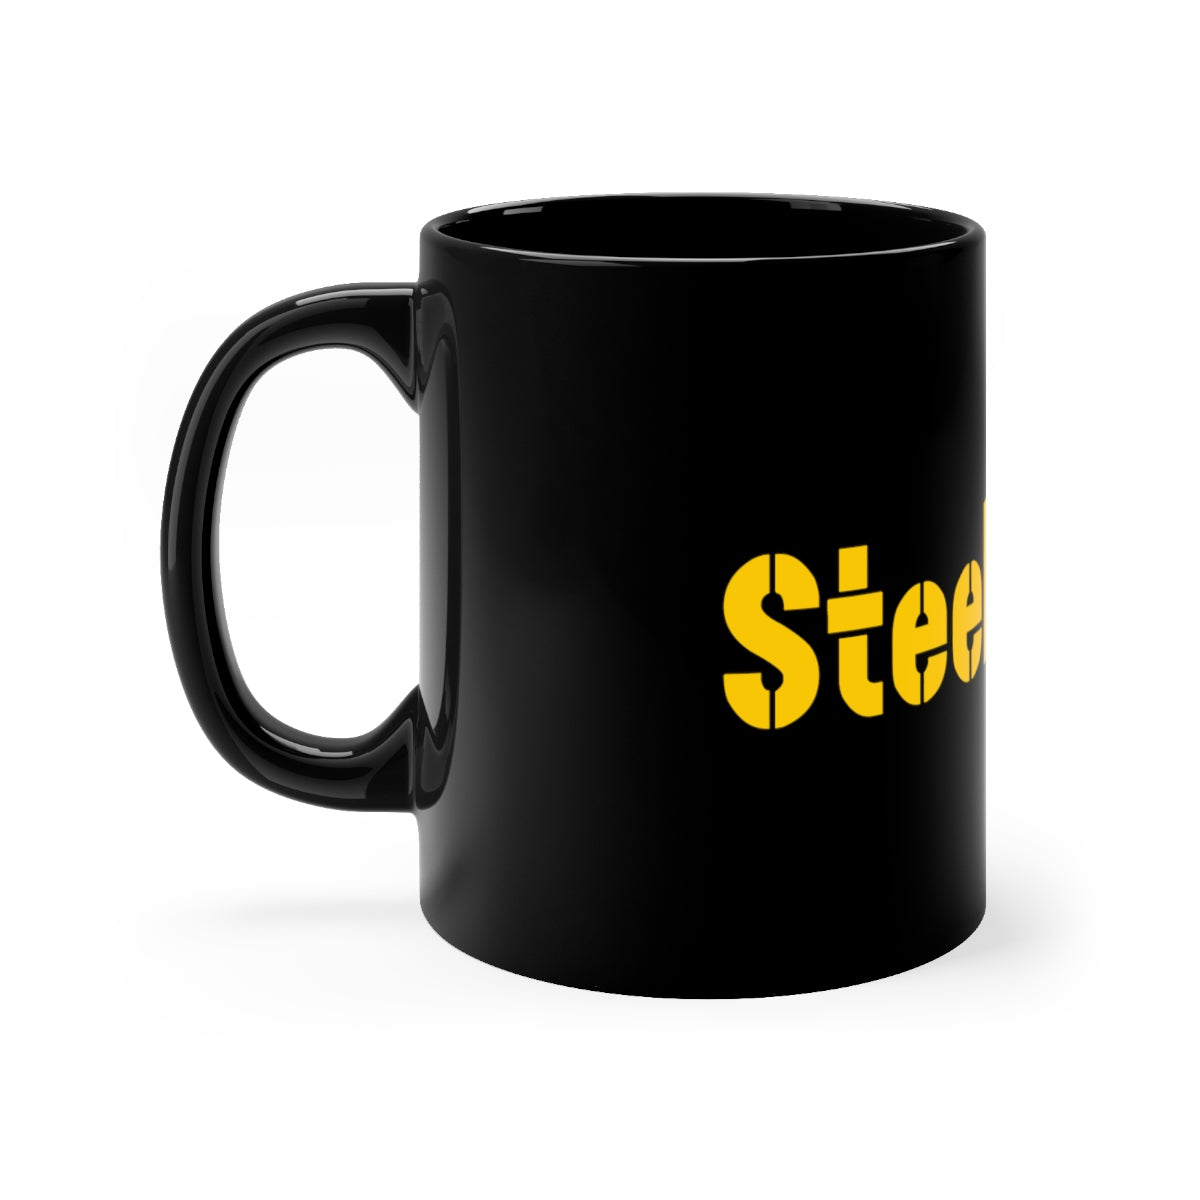 SteelerFury Black mug 11oz